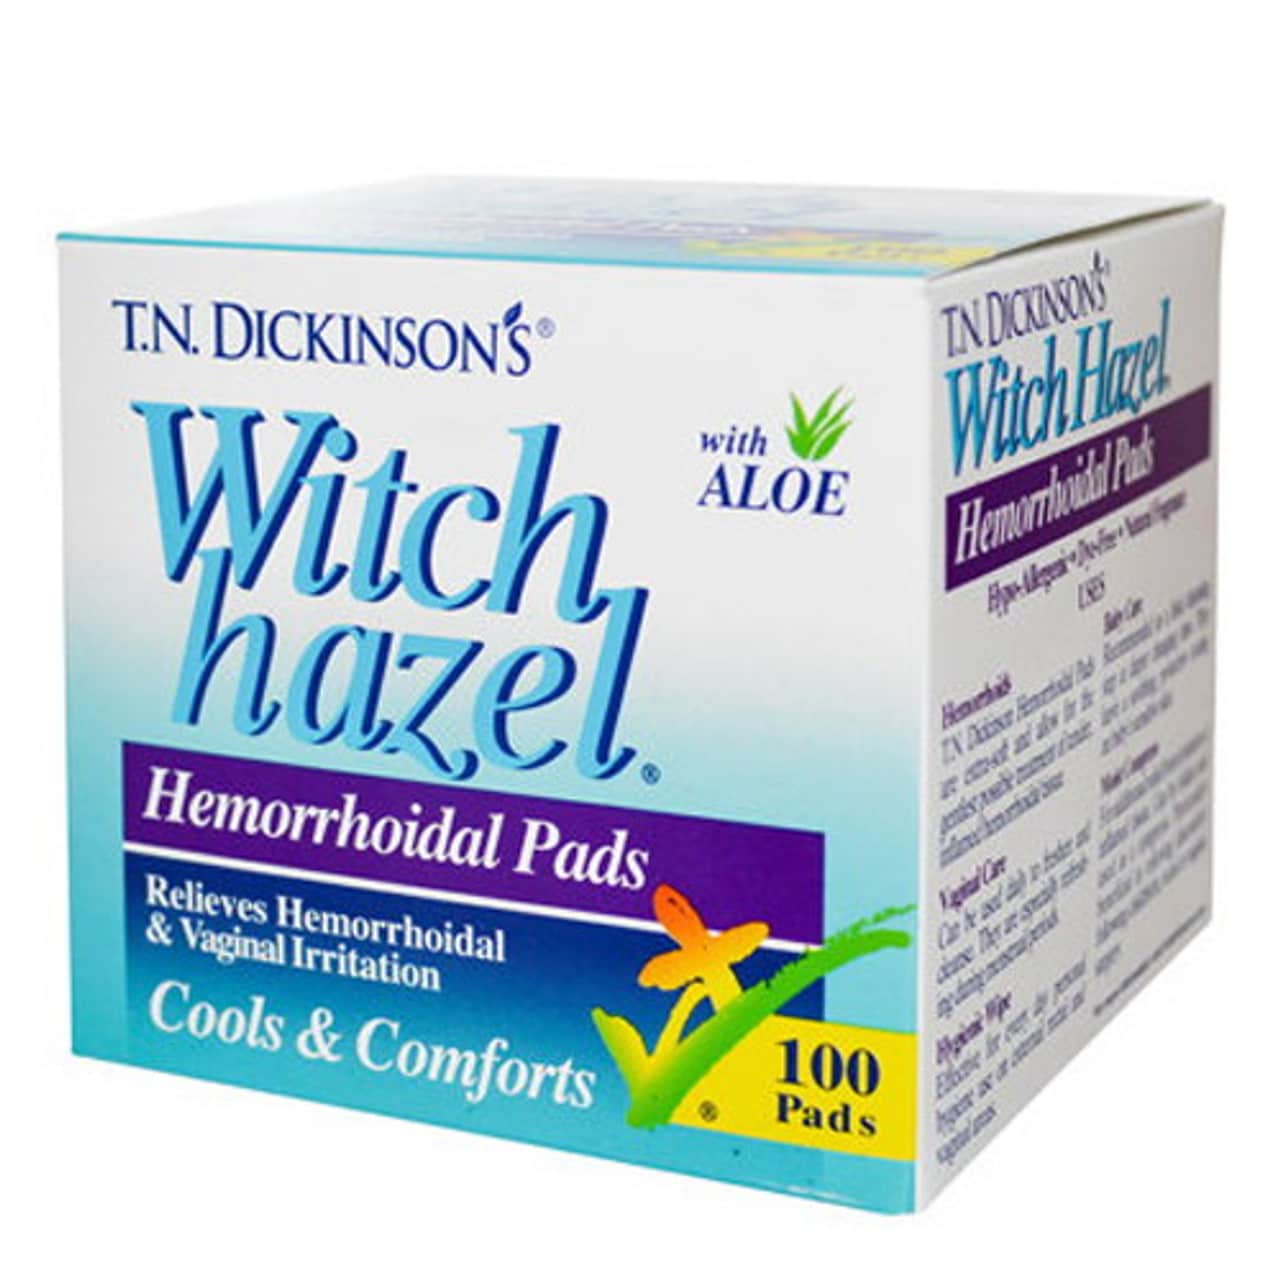 Hemorrhoidal Pads Witch Hazel With Aloe